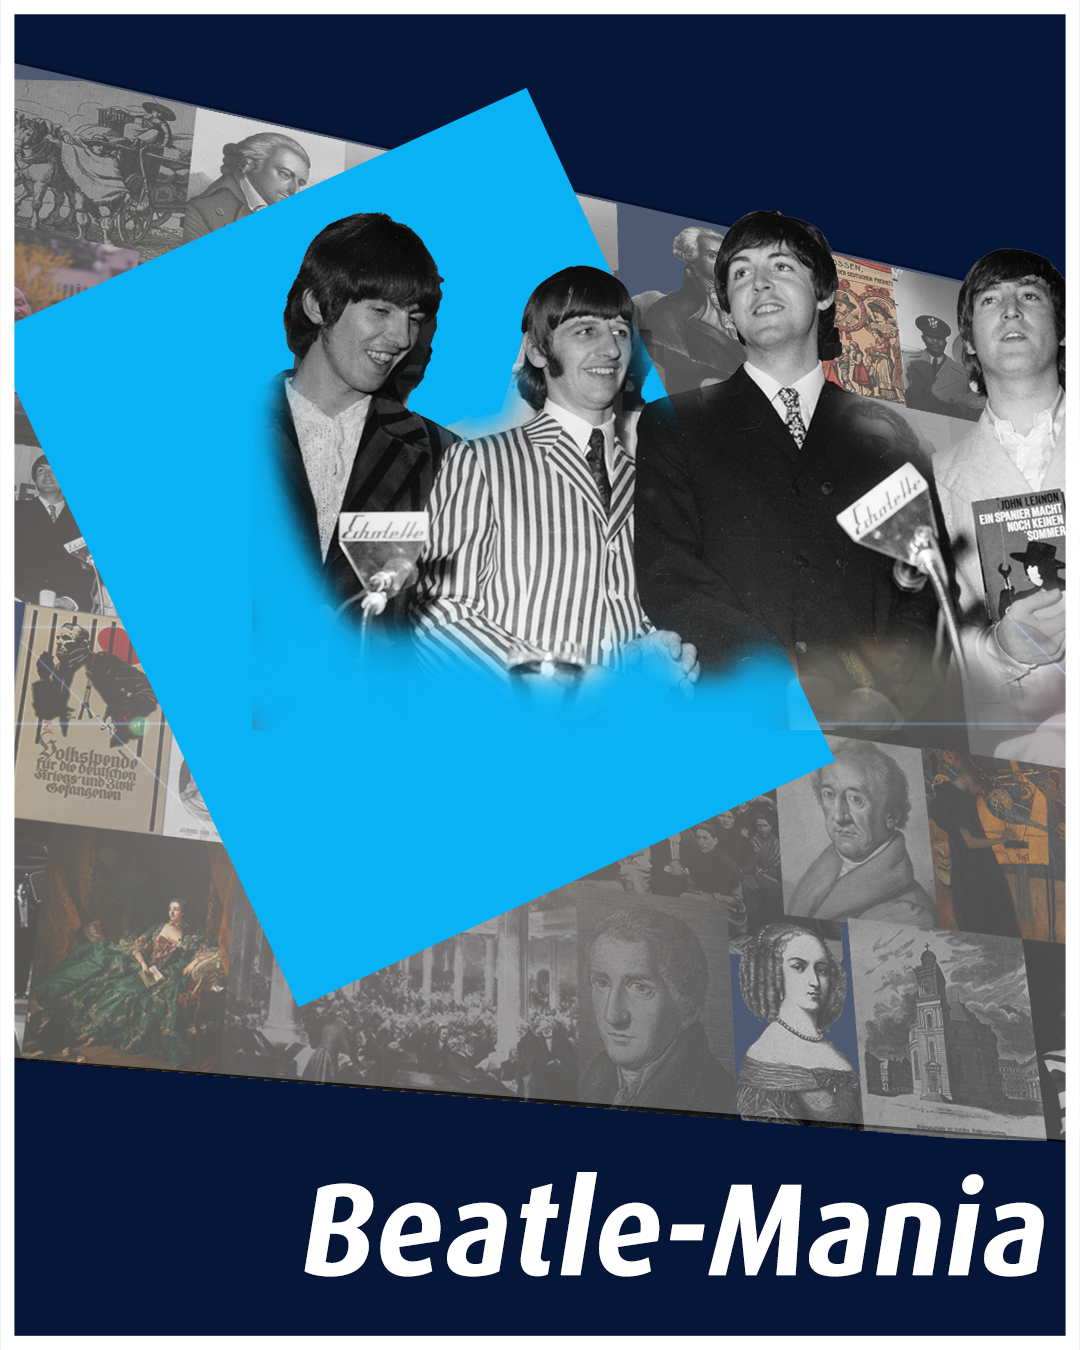 Bild zeigt die vier Beatles Mitglieder